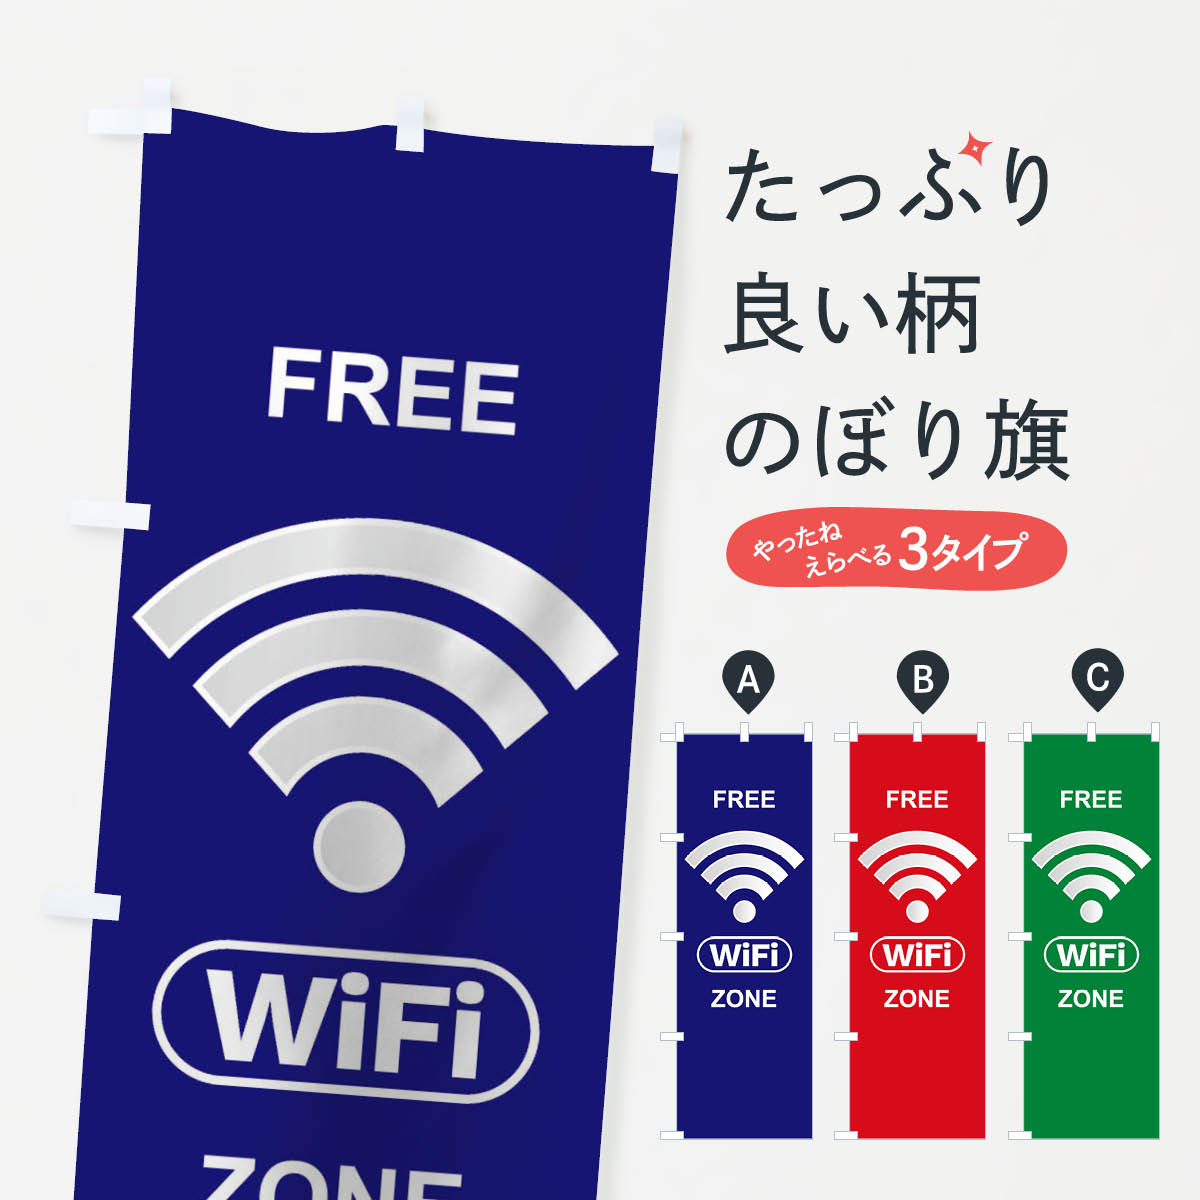 【ネコポス送料360】 のぼり旗 FREE Wi-Fi ZONEのぼり TTU7 Wi-Fi ZONE 無線LAN・WiFi グッズプロ グッズプロ グッズプロ グッズプロ グッズプロ